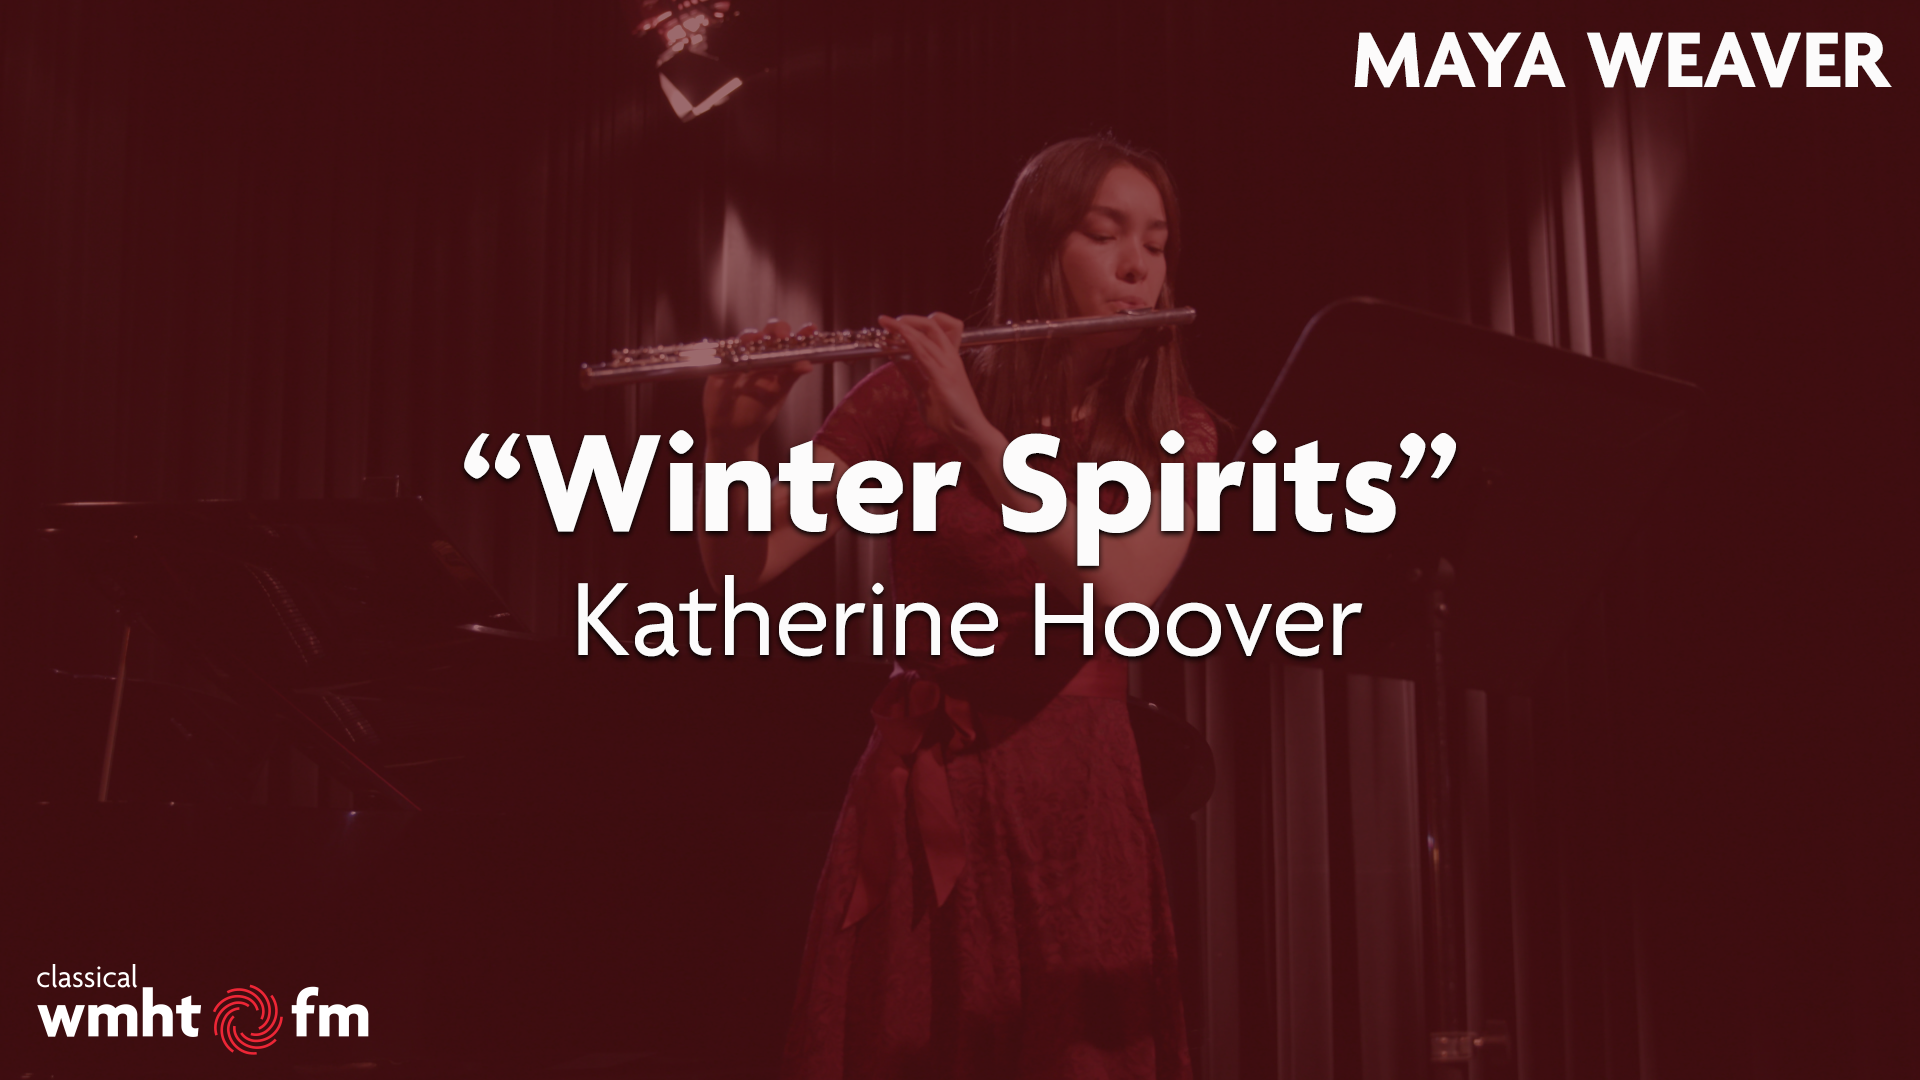 Maya Weaver: “Winter Spirits” by Katherine Hoover